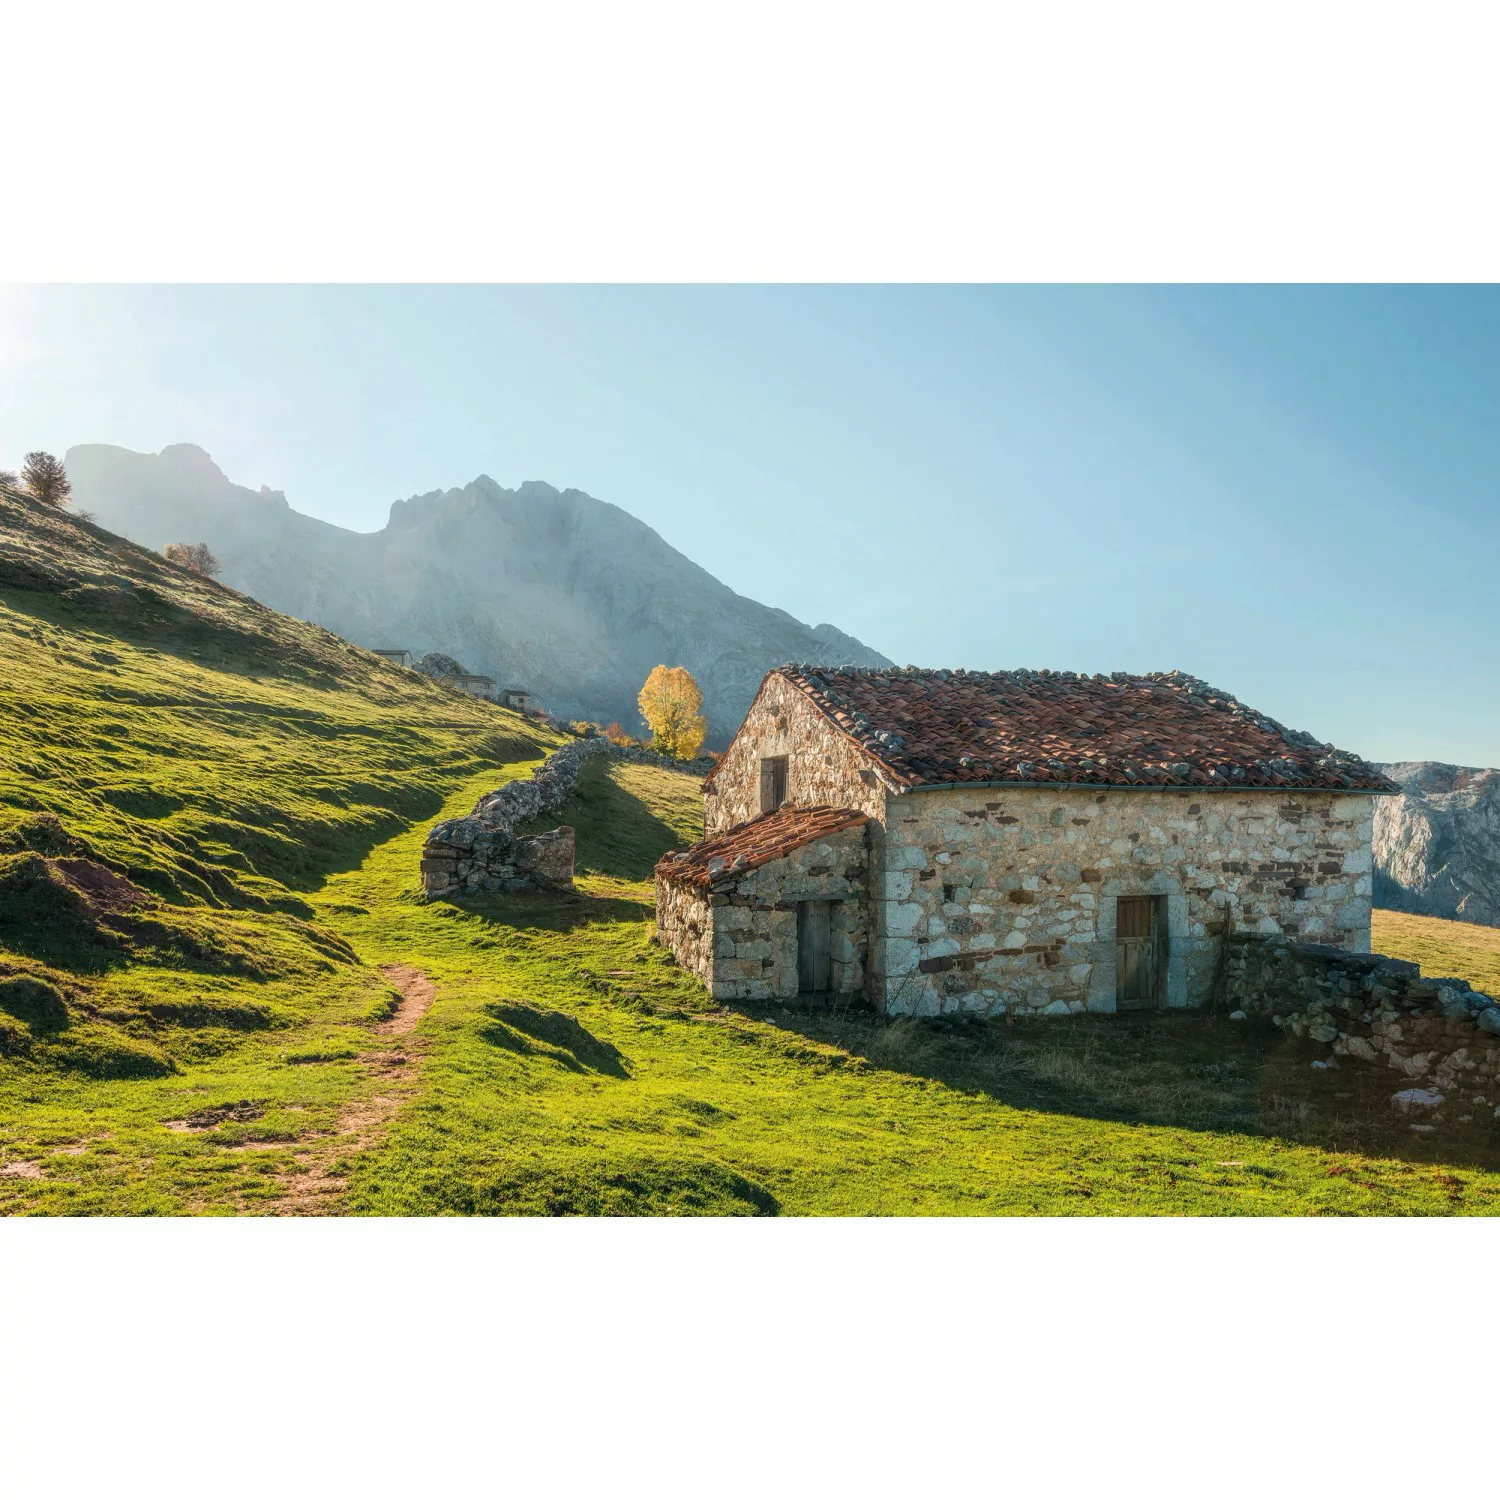 KOMAR Vlies Fototapete - Picos de Europe Alm - Größe 450 x 280 cm mehrfarbi günstig online kaufen